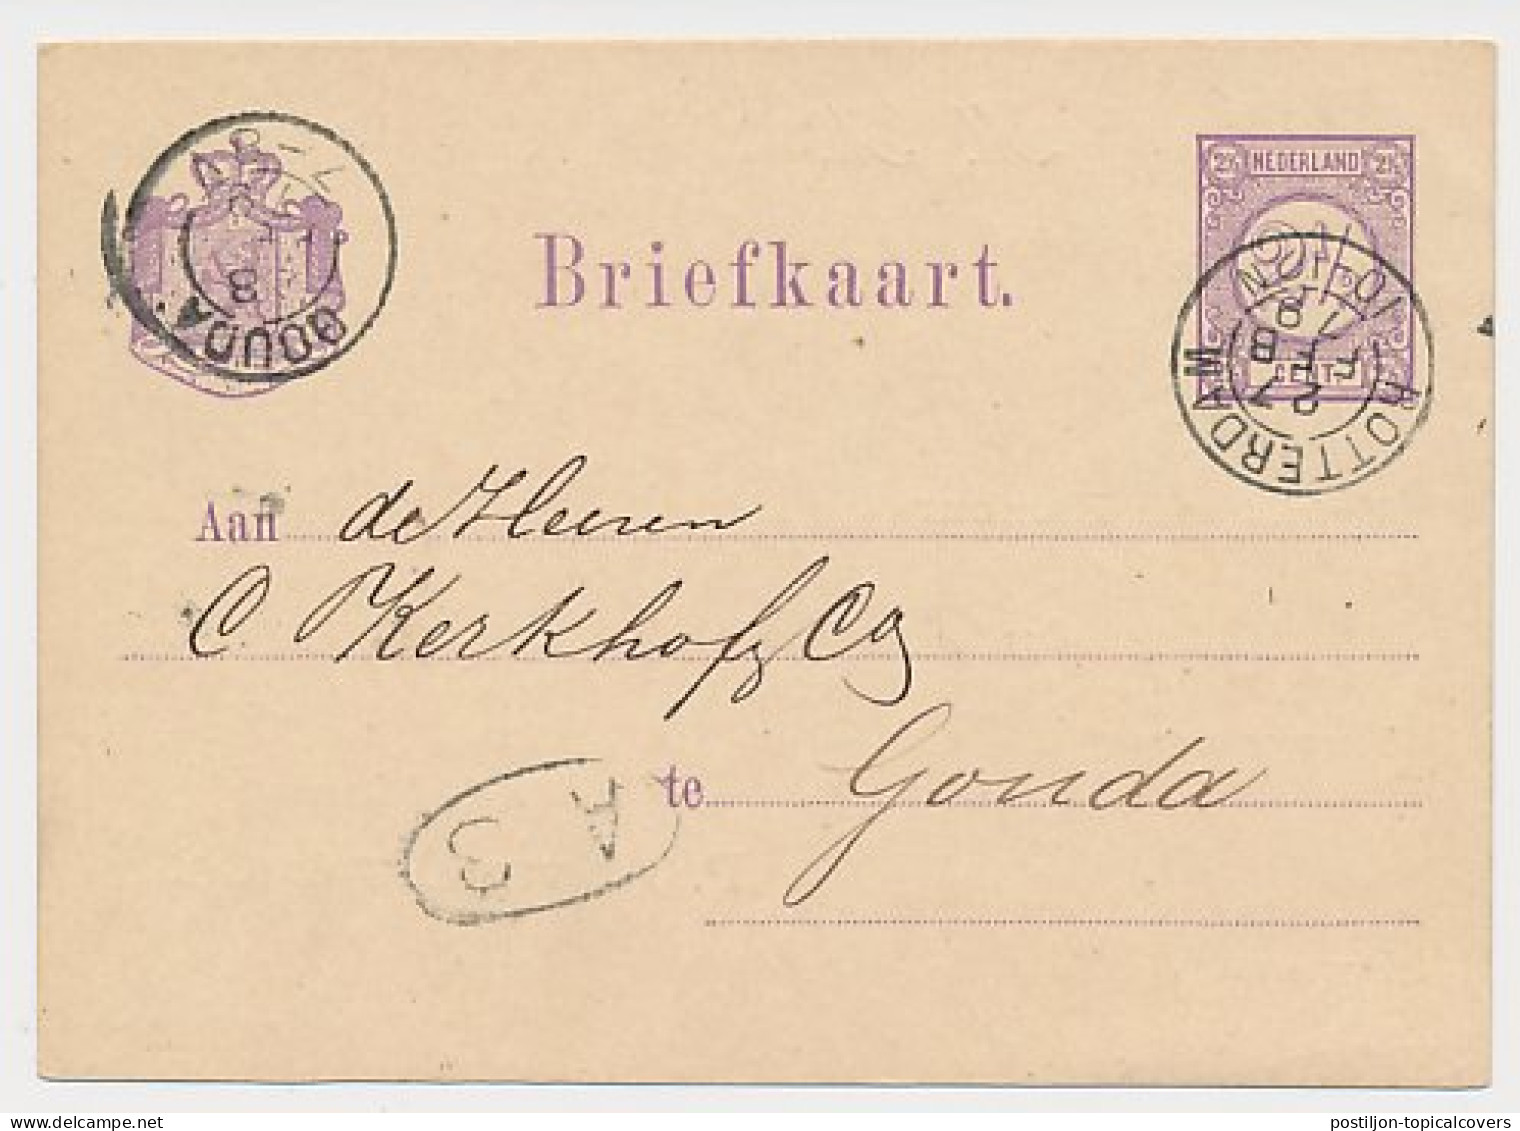 Briefkaart G. 14 Particulier Bedrukt Rotterdam 1879 - Ganzsachen